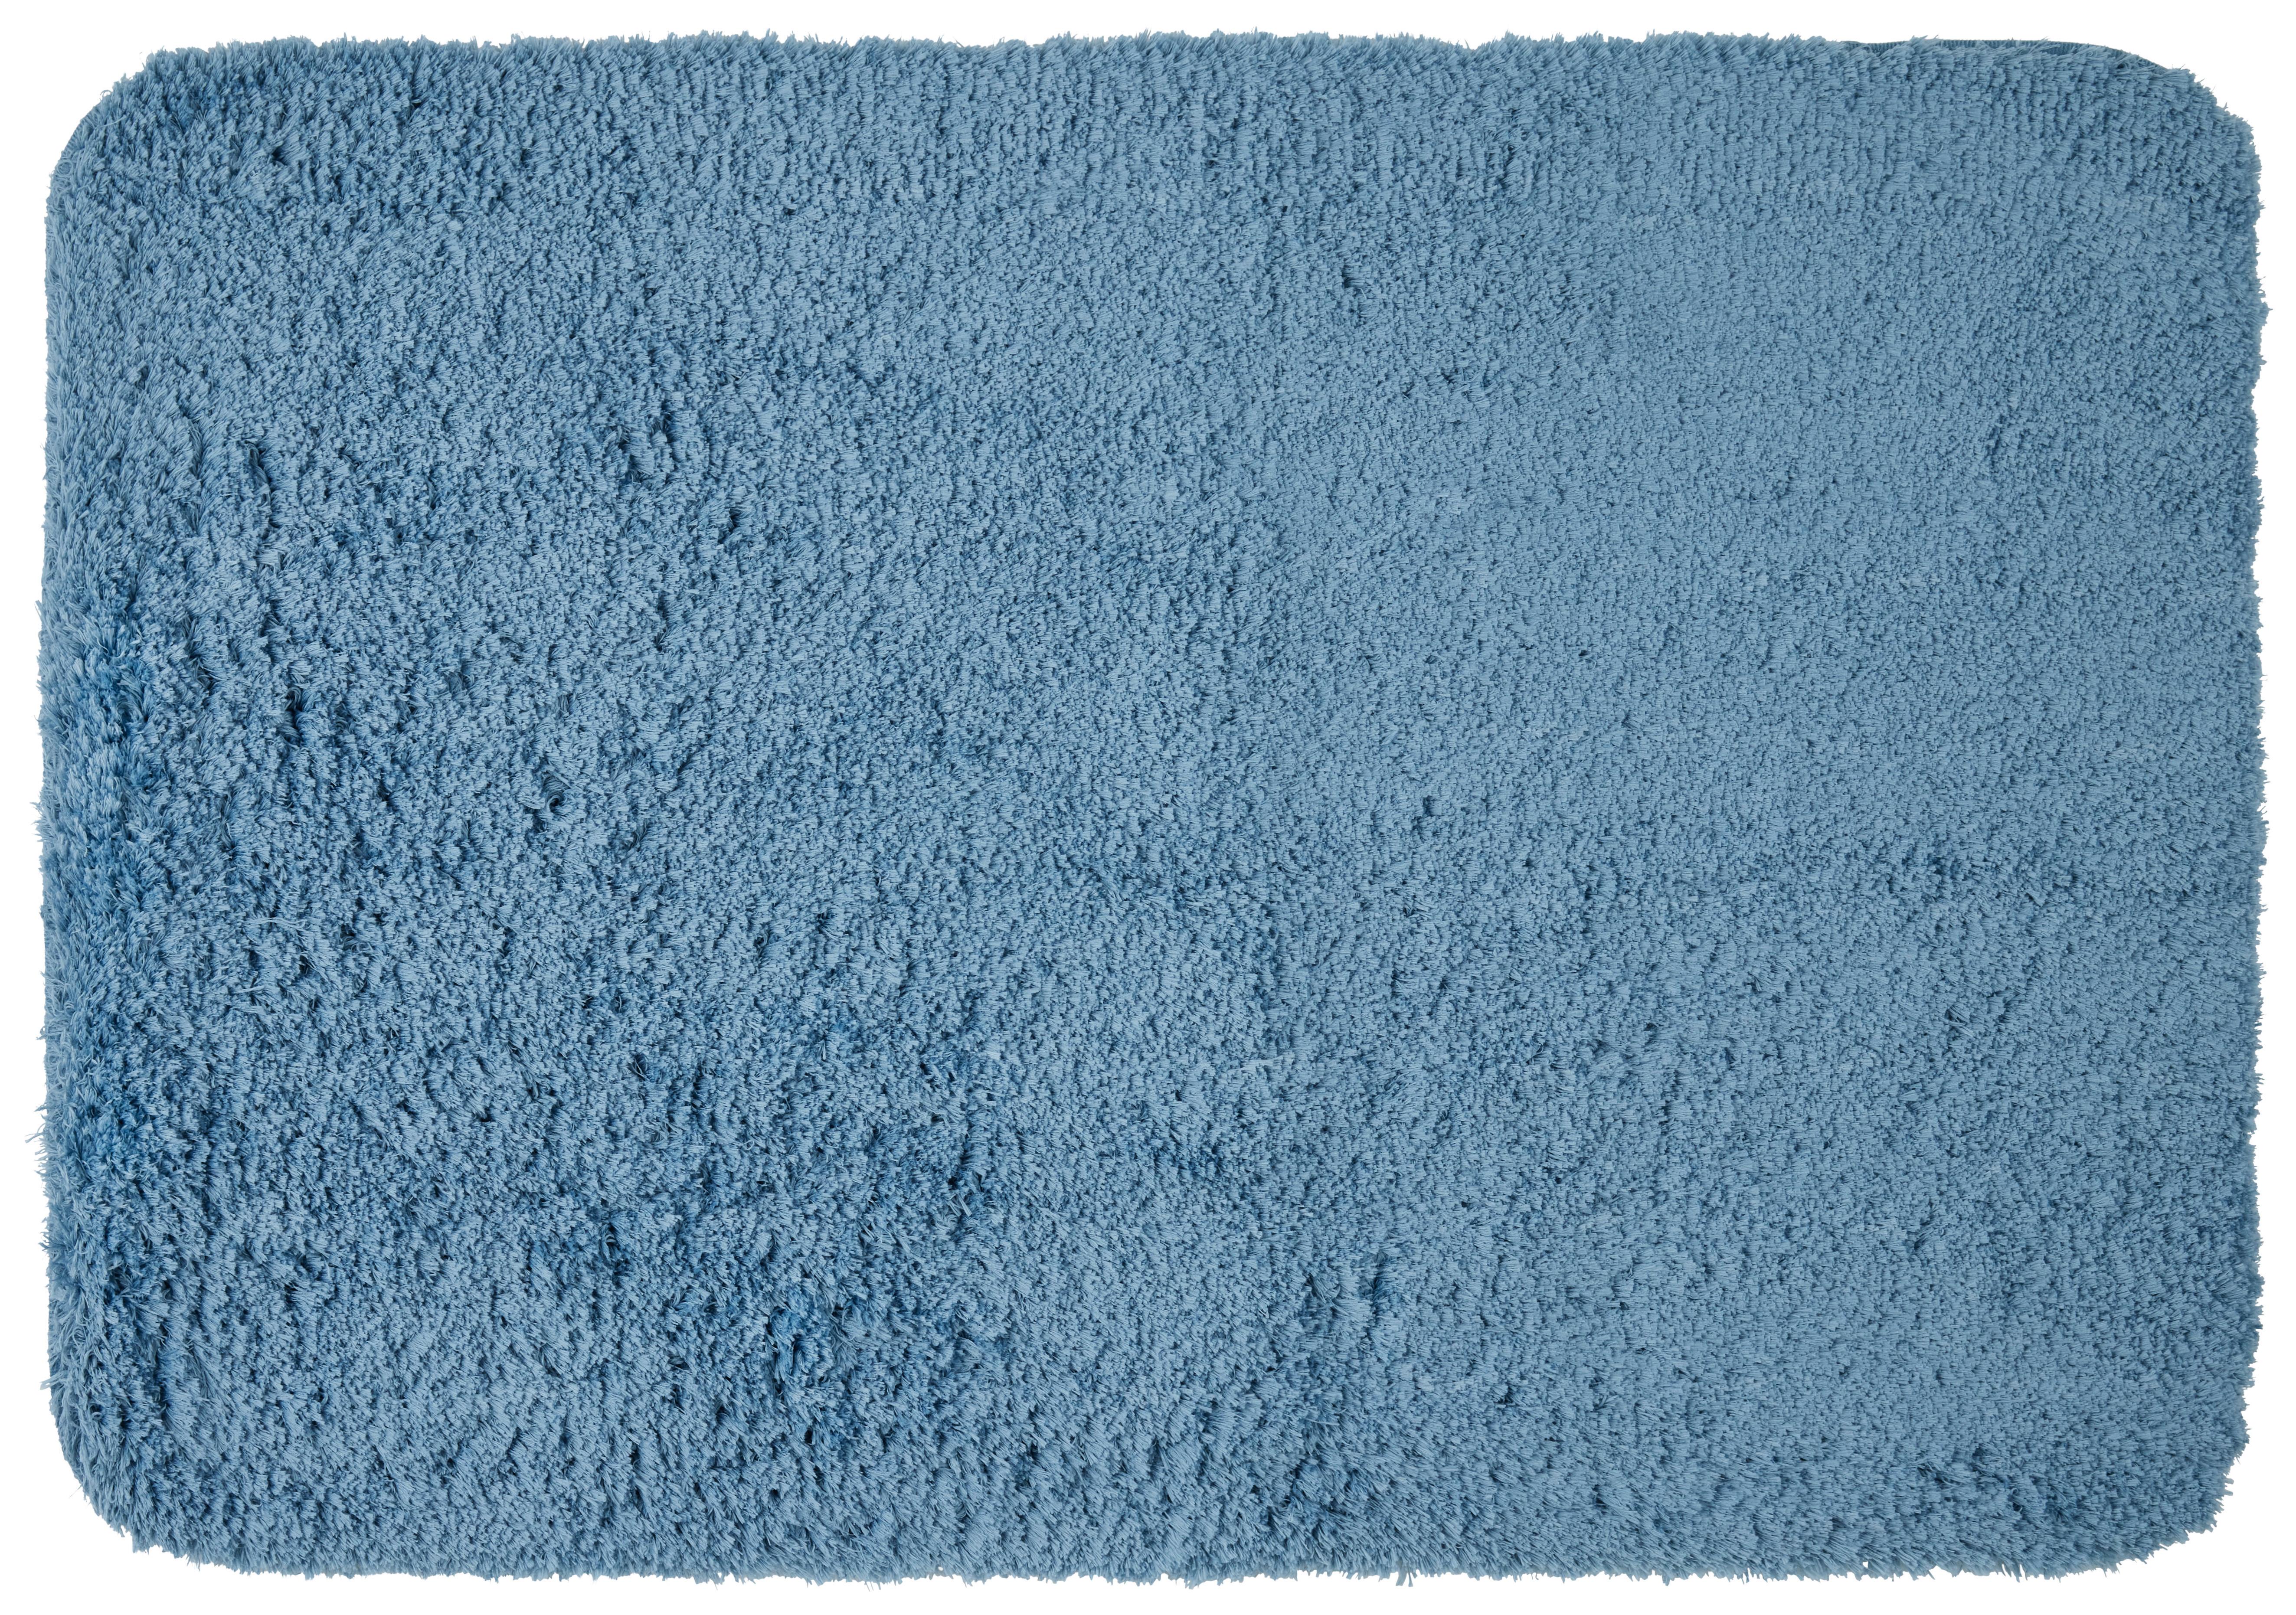 Badematte Chris in Blau ca. 60x90cm - Blau, Textil (60/90cm) - Premium Living